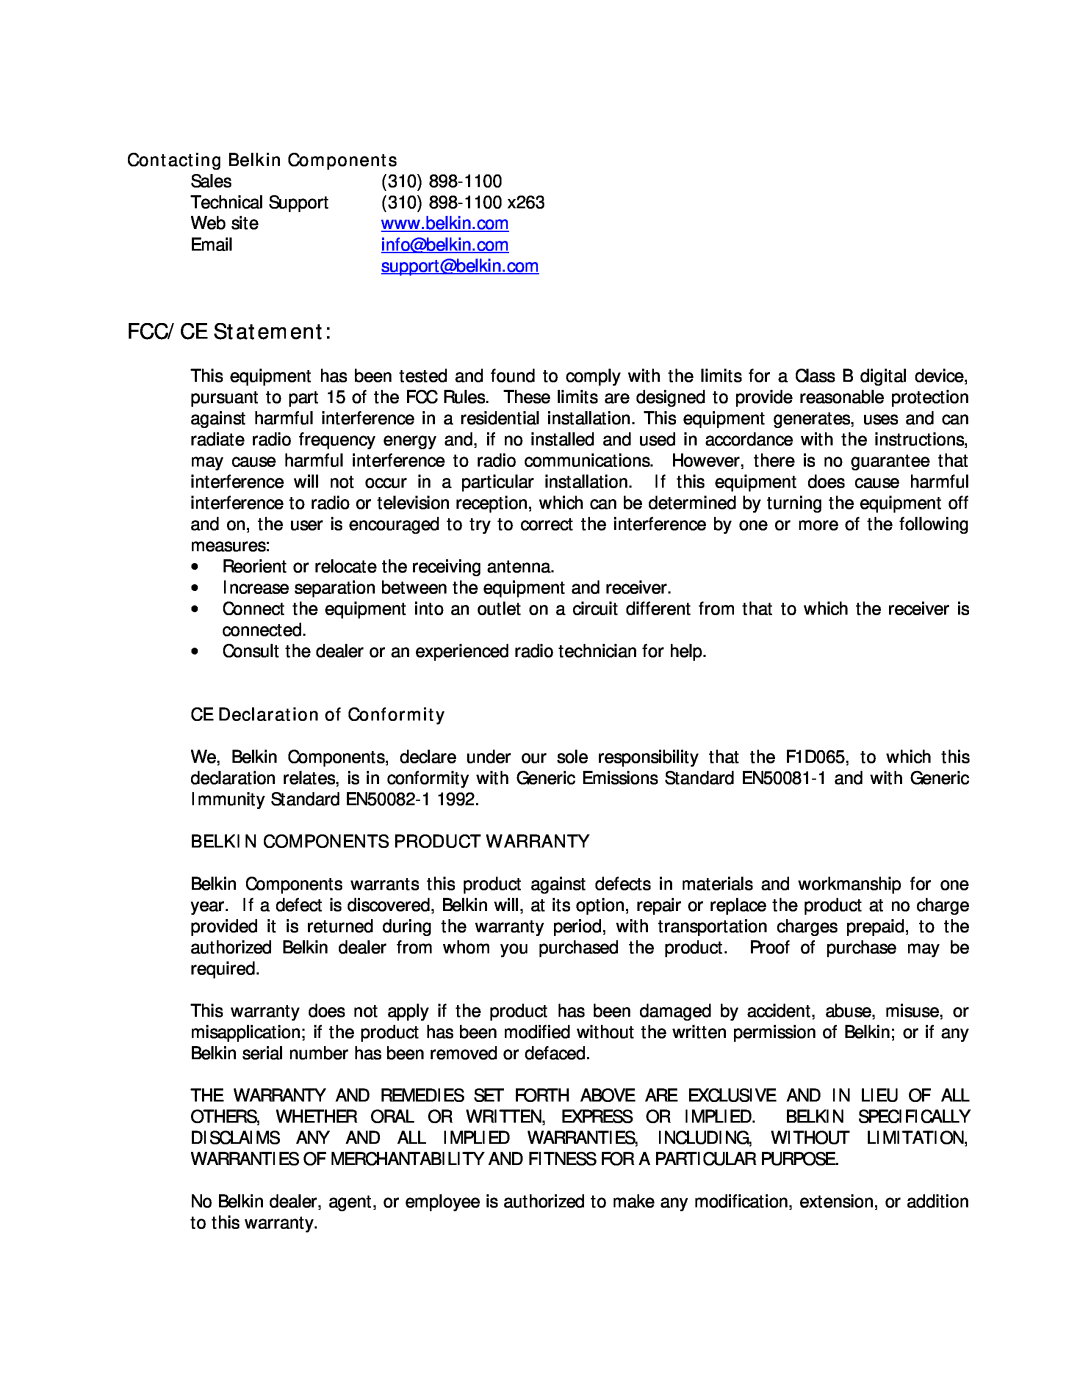 Belkin P72021 warranty FCC/CE Statement, Contacting Belkin Components, info@belkin.com, support@belkin.com 